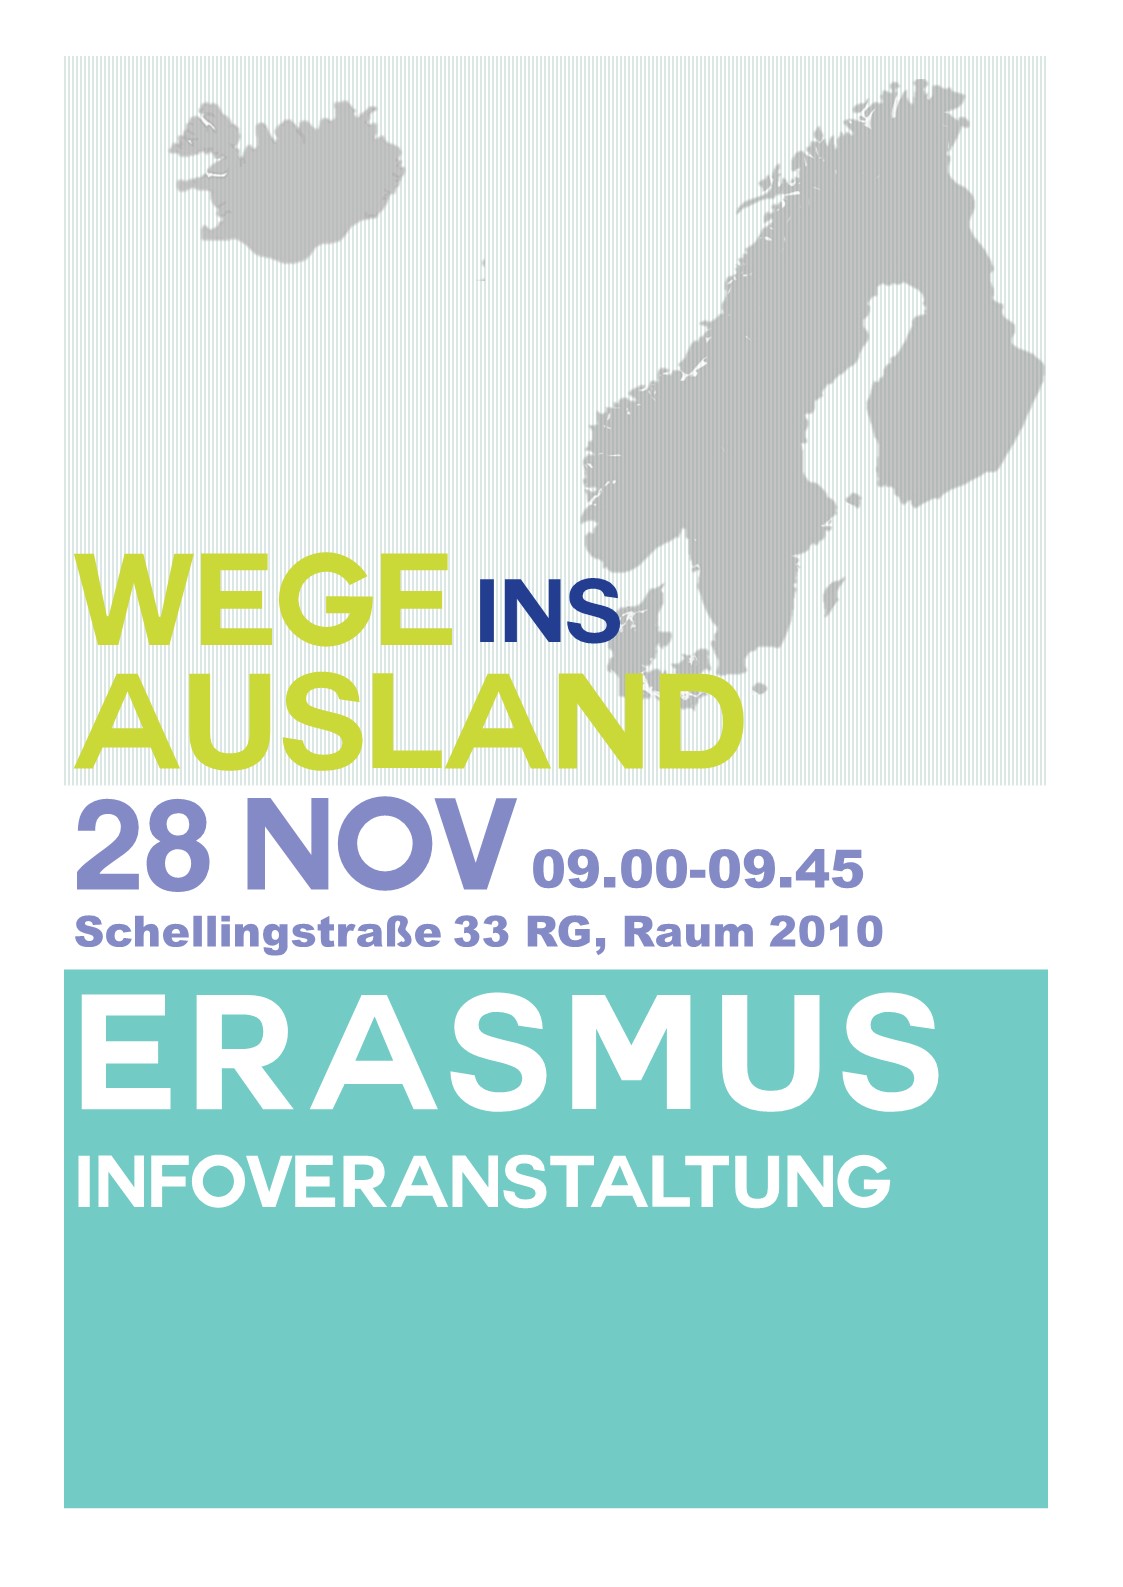 Erasmus_Infoveranstaltung_oT (002)